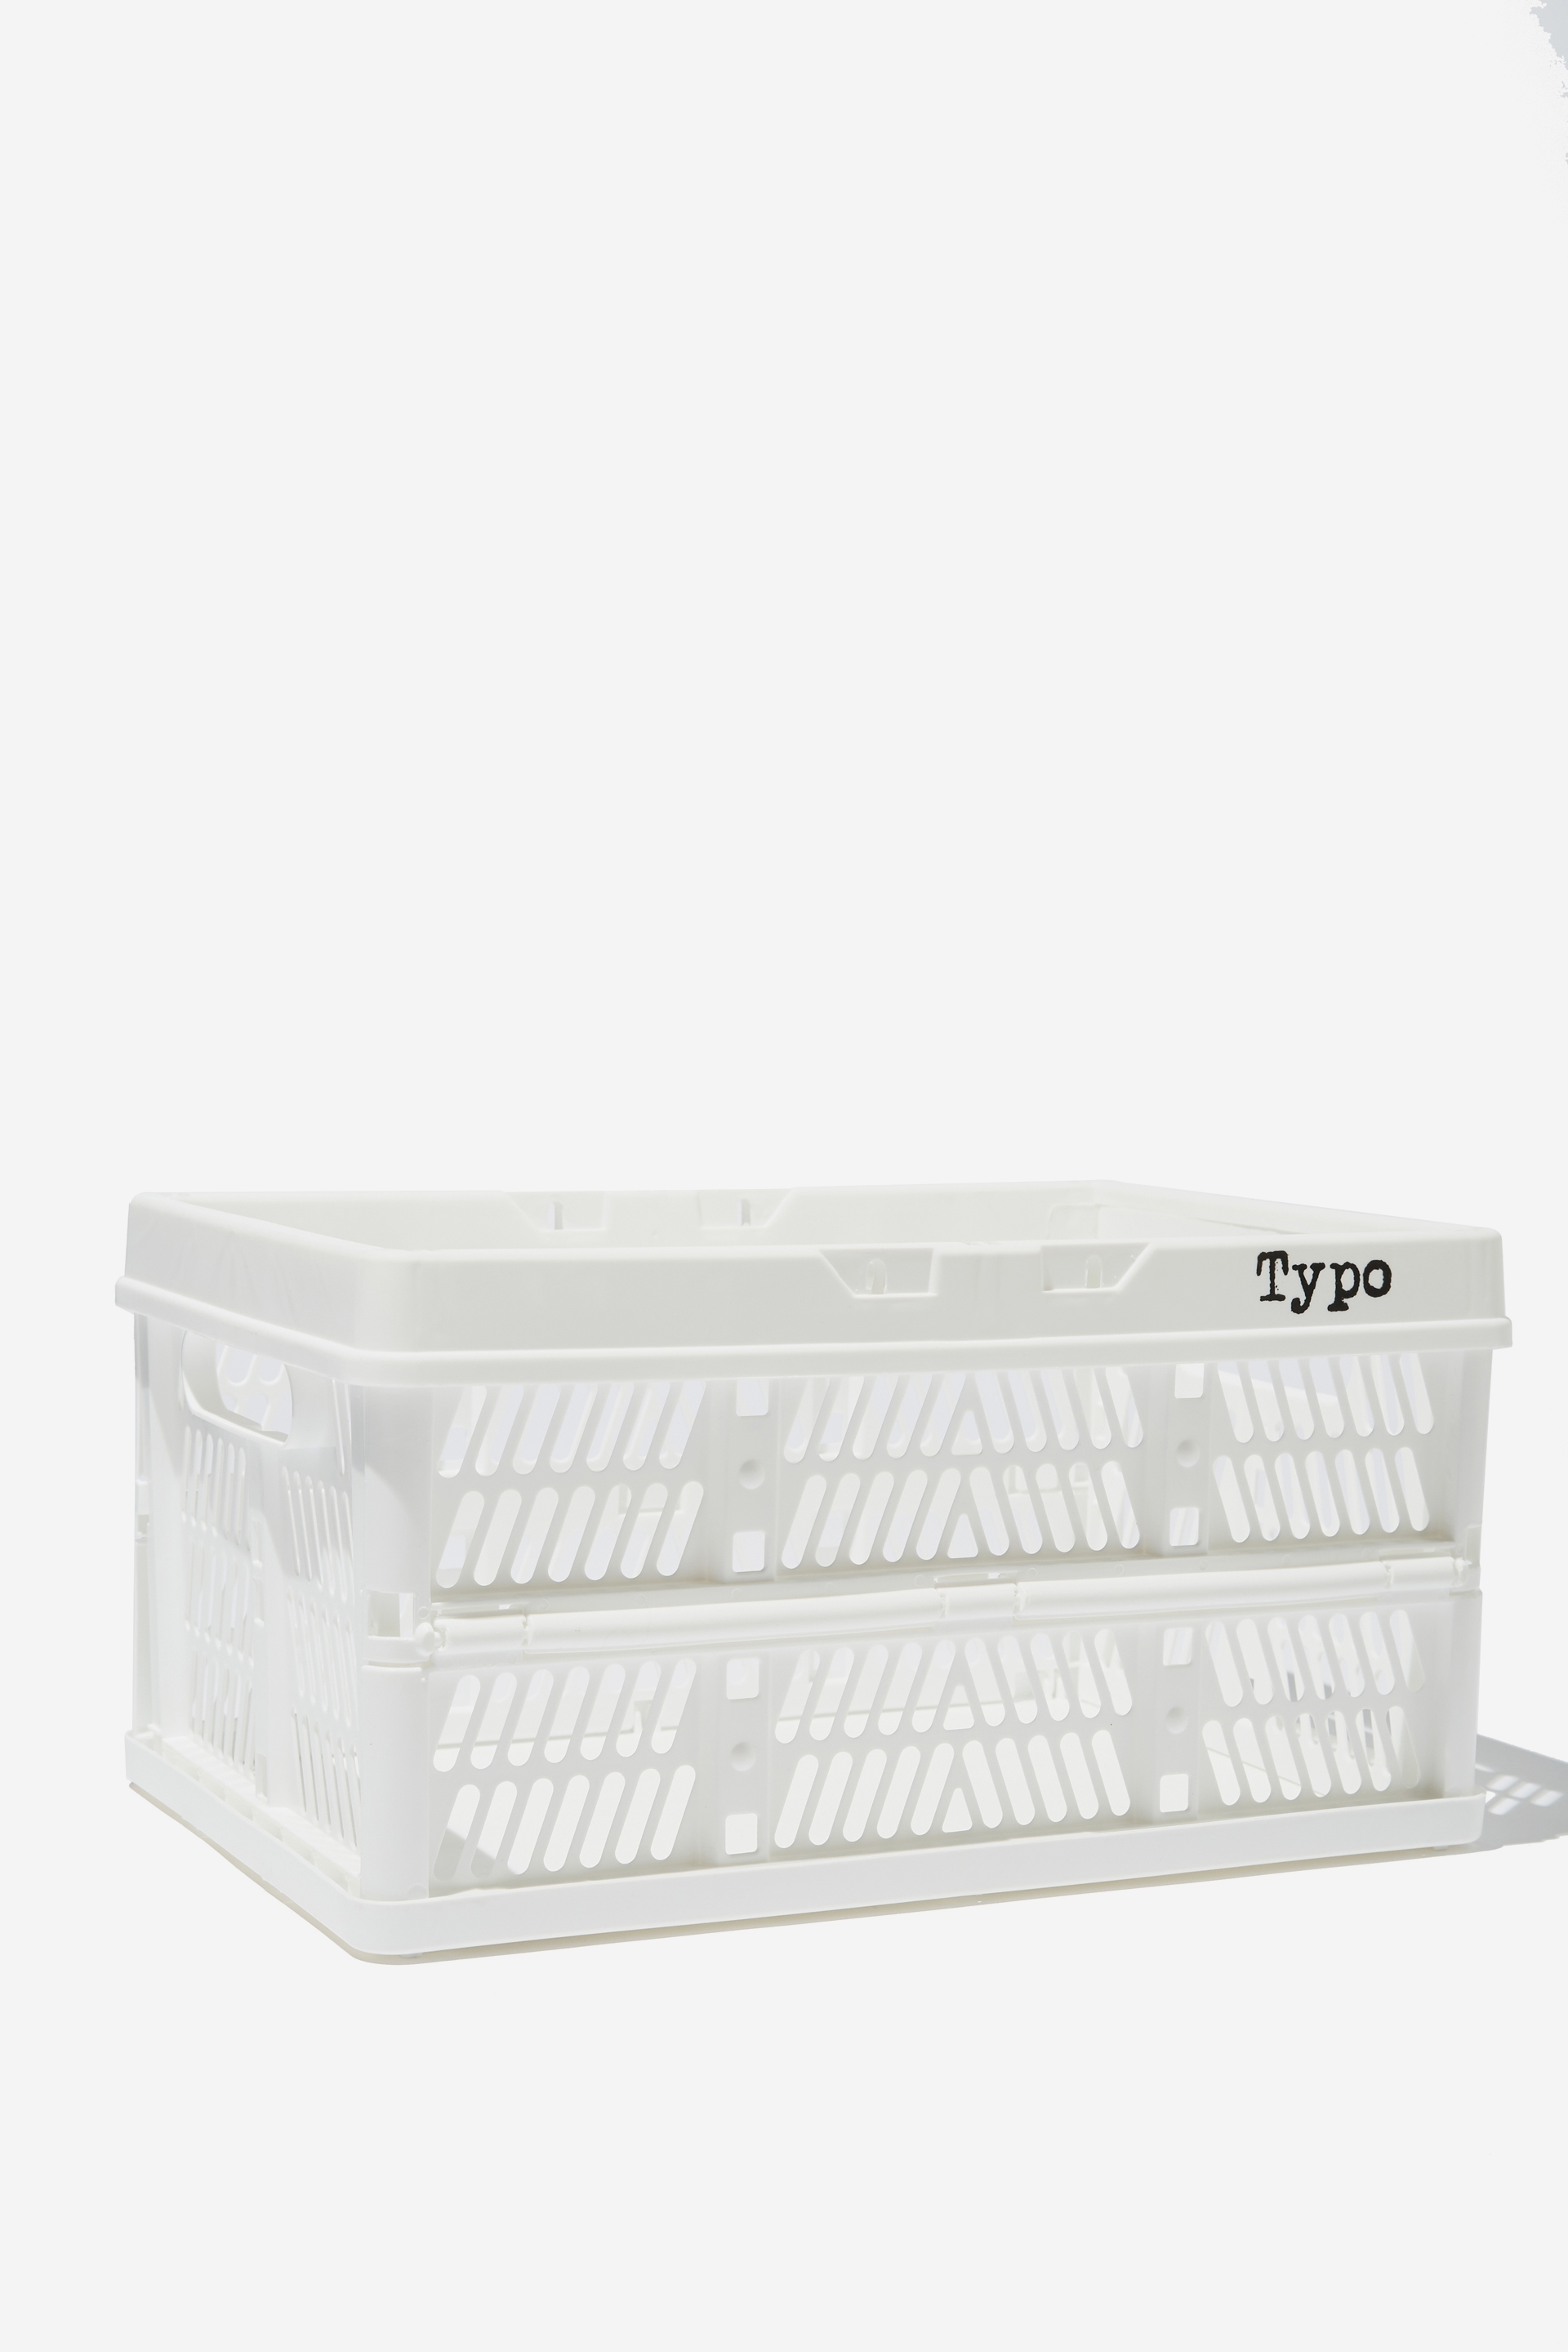 Typo - Midi Foldable Storage Crate - White